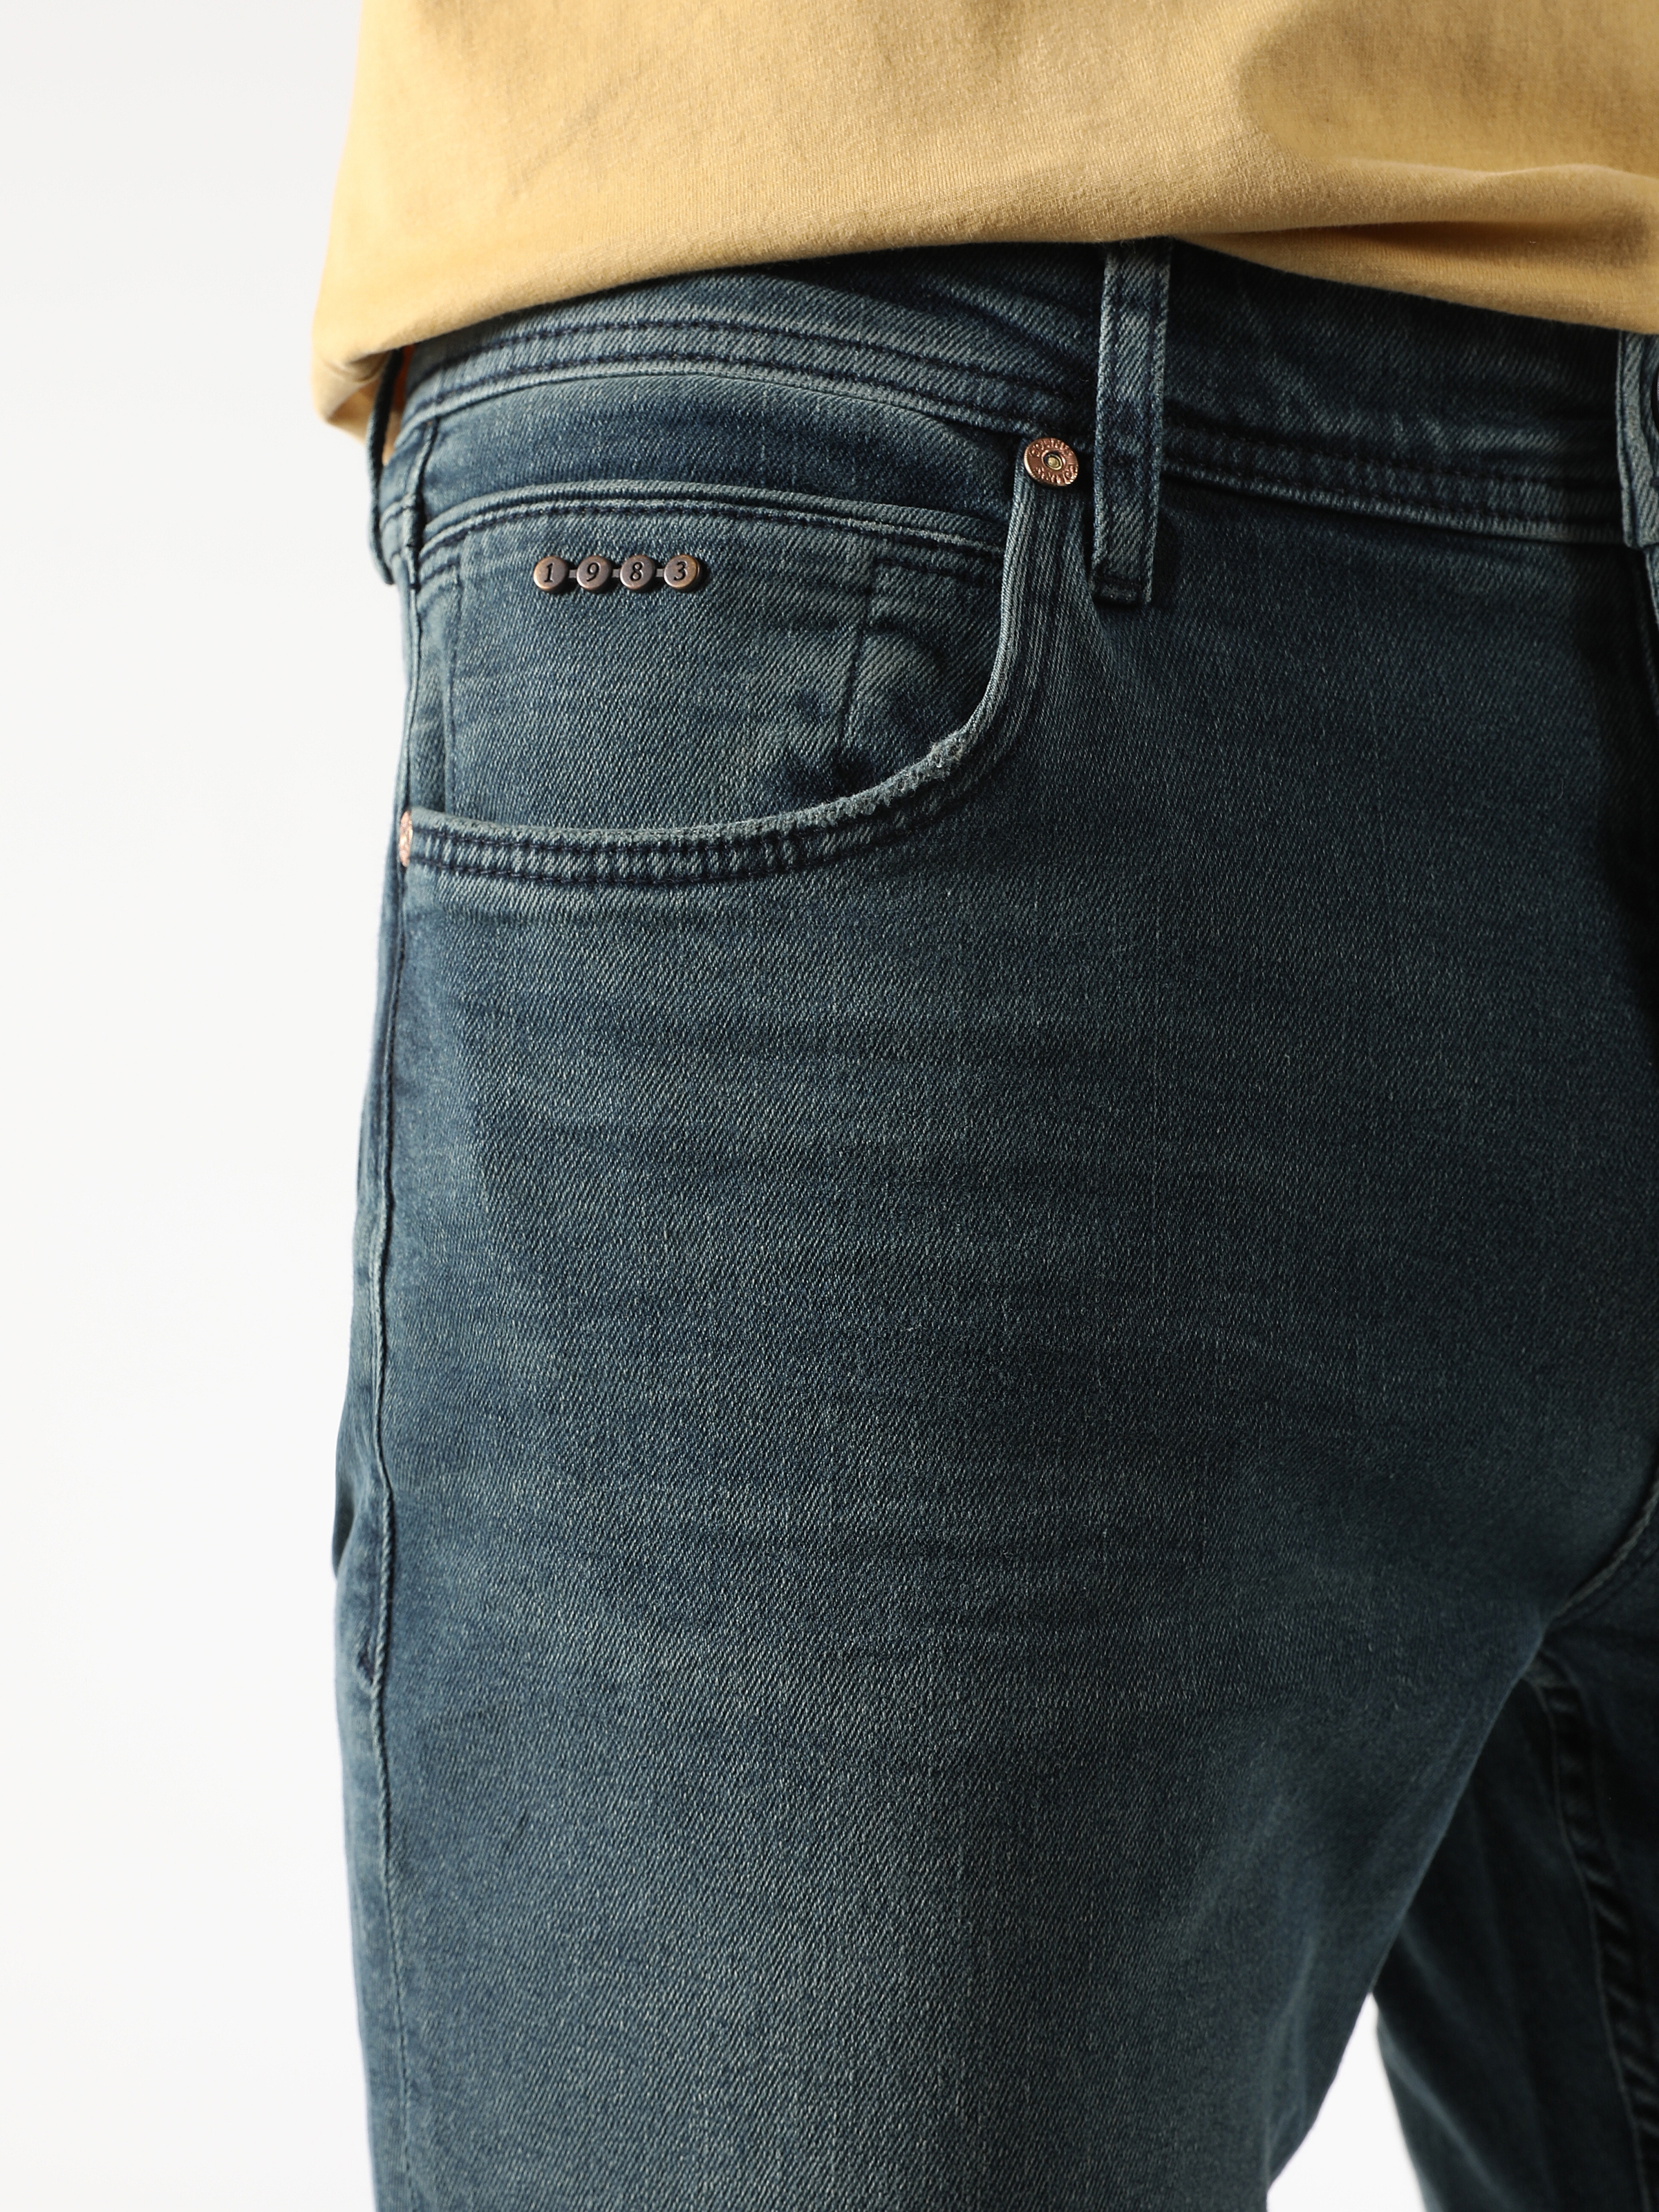 Afișați detalii pentru Pantaloni De Barbati Albastru inchis Slim Fit 041 DANNY